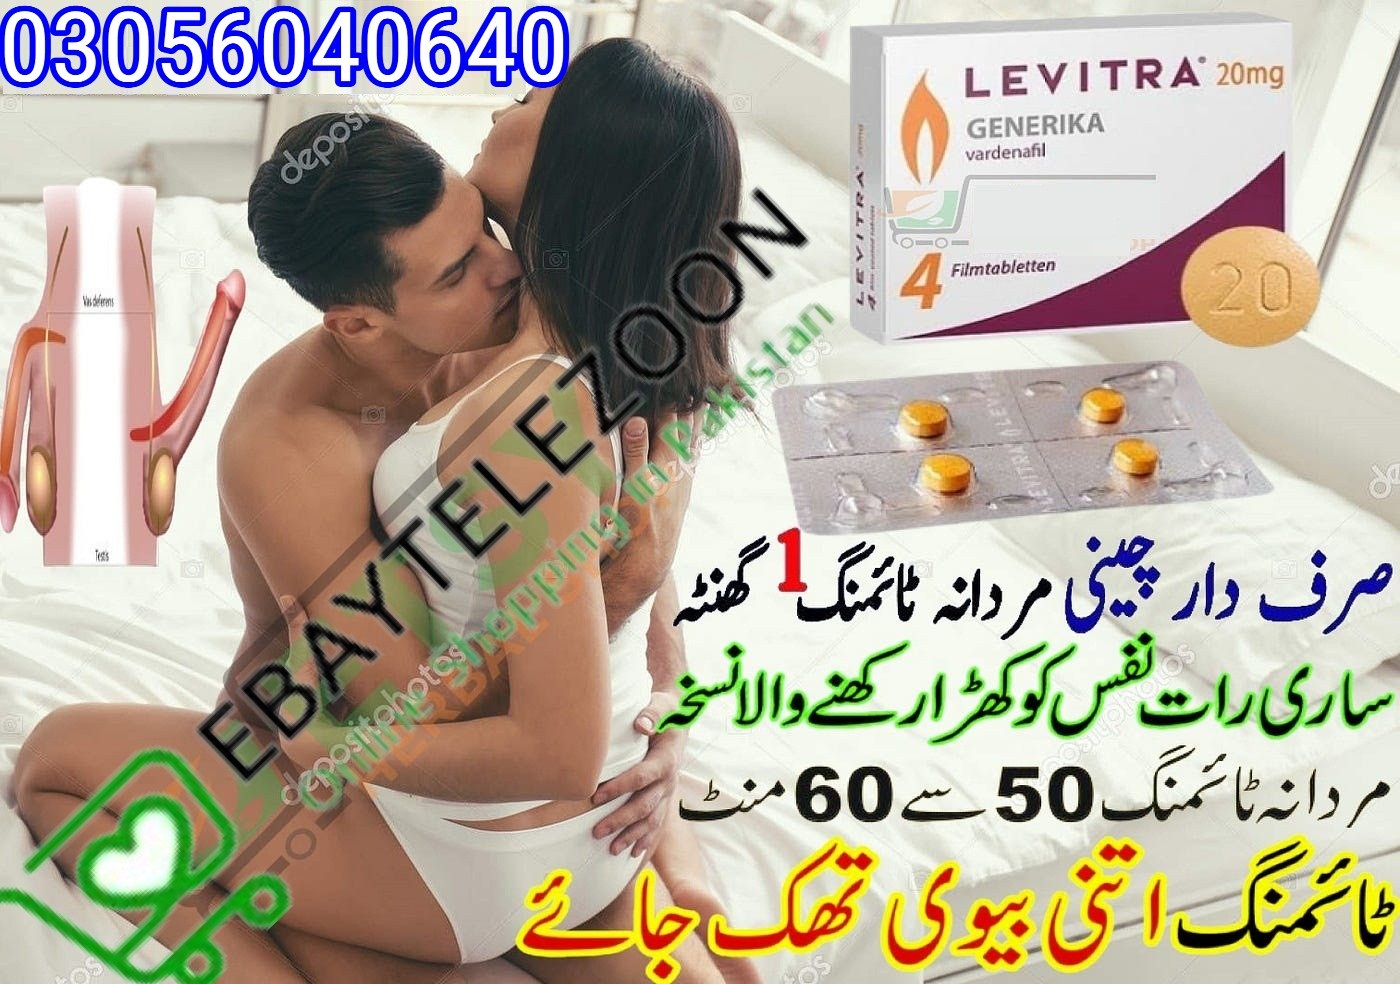 Levitra Tablets in Sukkur – 0305-6040640